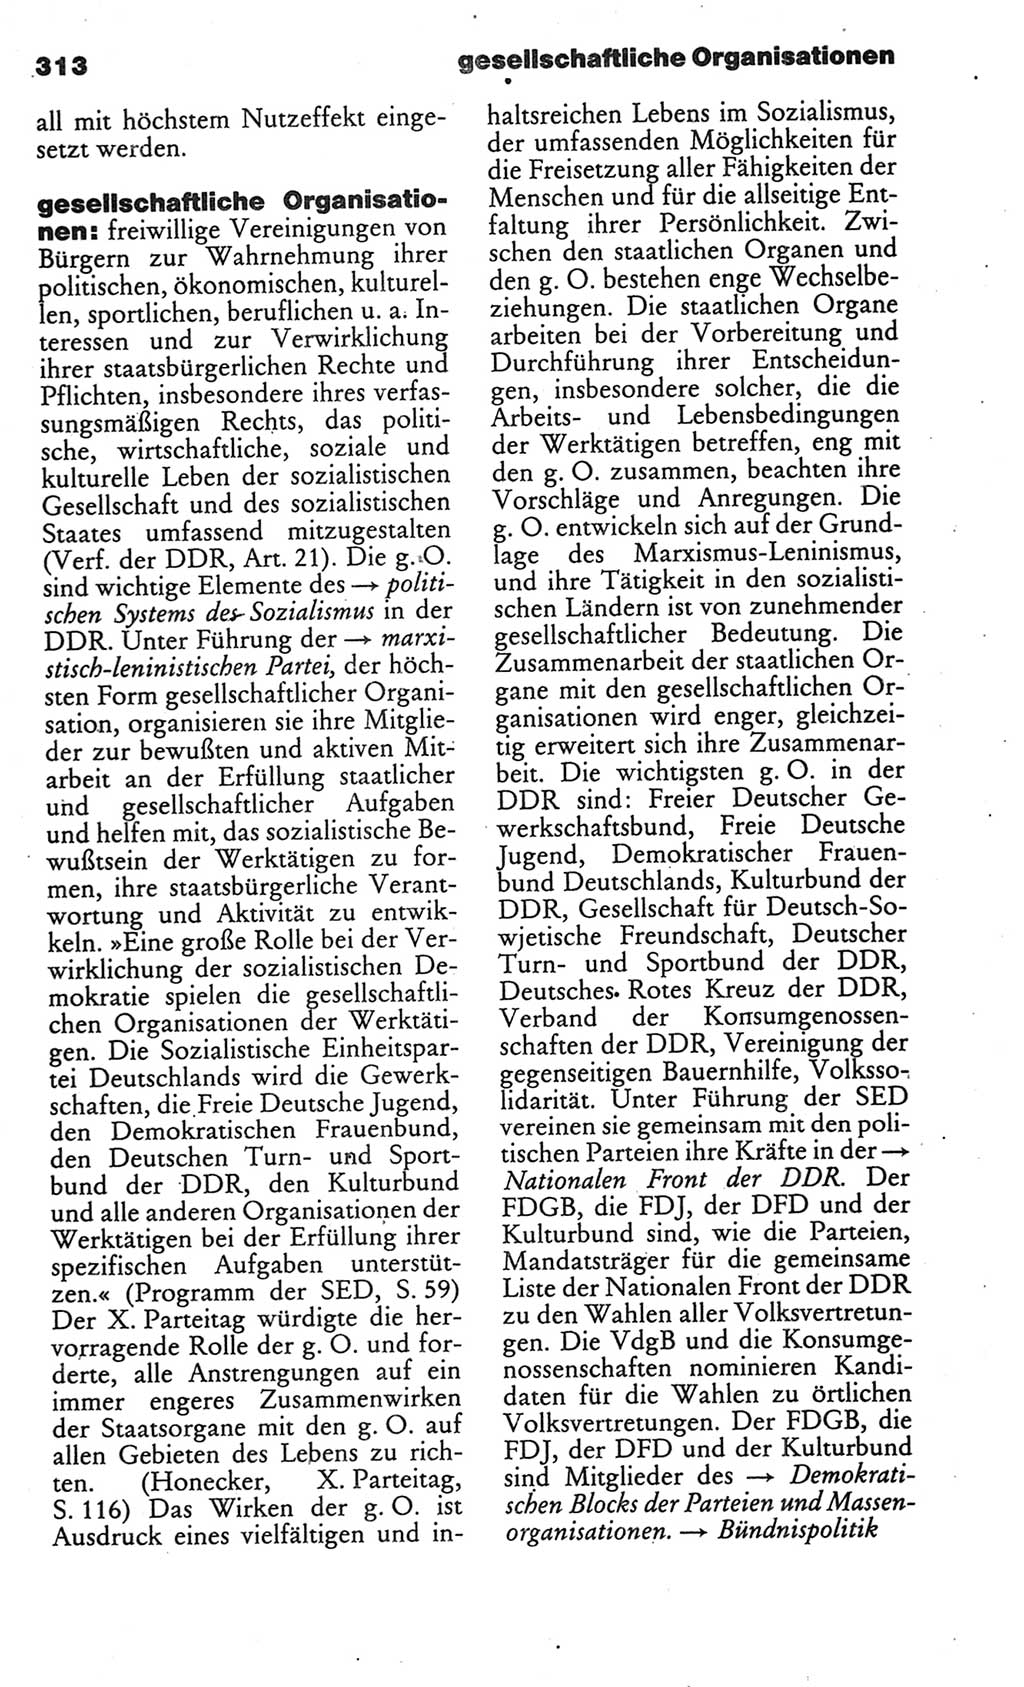 Kleines politisches Wörterbuch [Deutsche Demokratische Republik (DDR)] 1986, Seite 313 (Kl. pol. Wb. DDR 1986, S. 313)